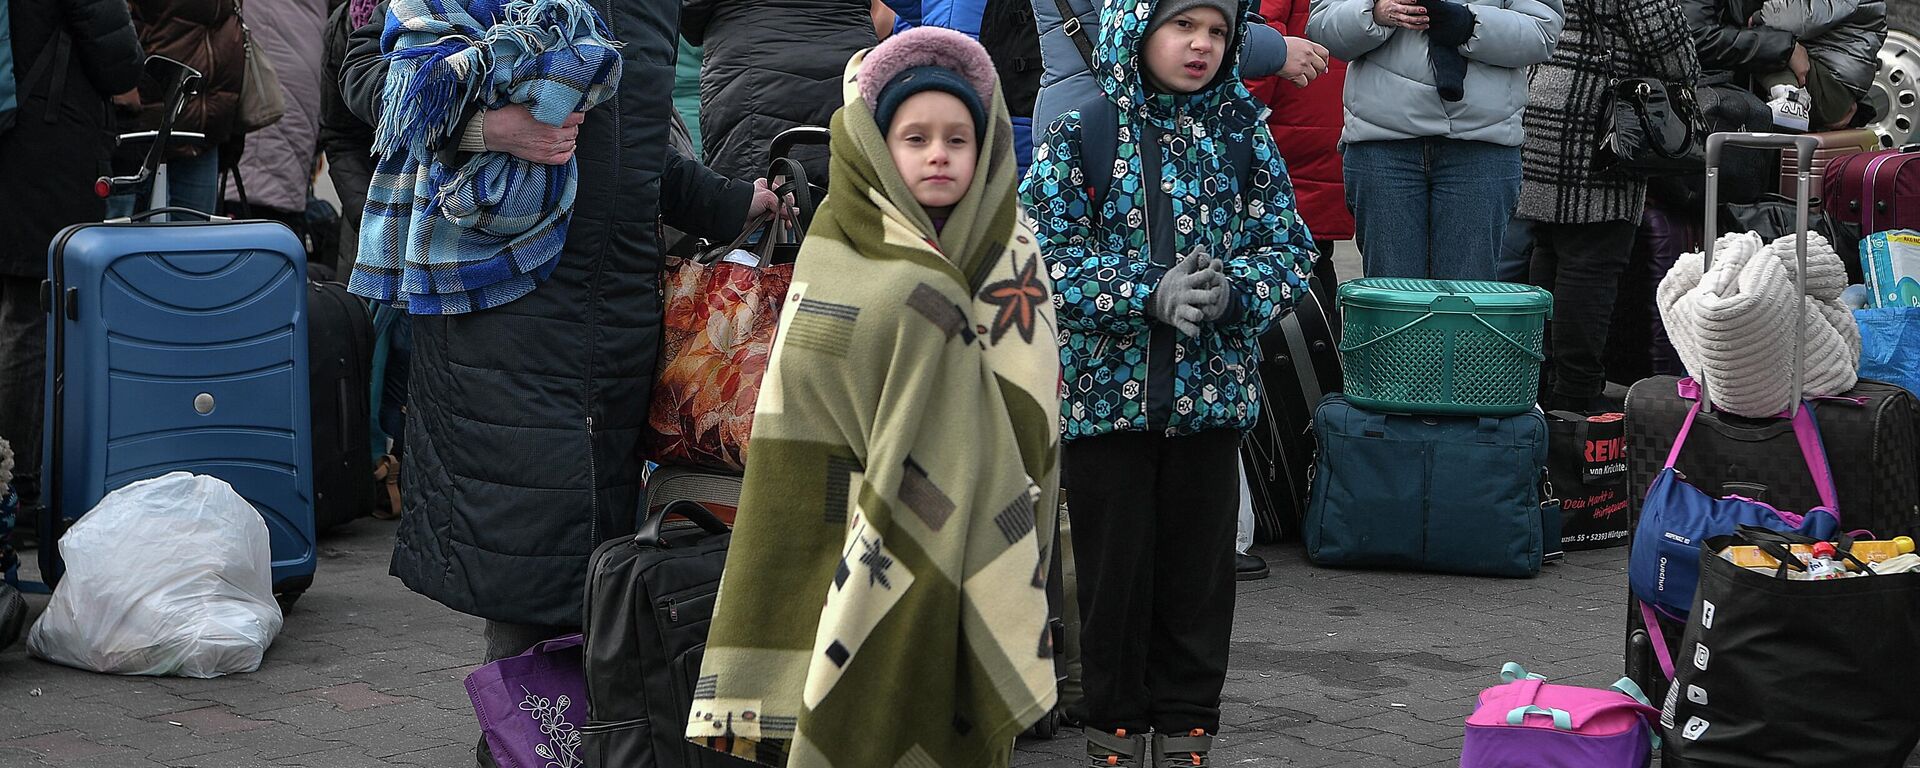 Люди стоят со своим багажом в ожидании посадки в автобусы, которые доставят их дальше в Польшу или за границу из временного приюта для беженцев - Sputnik Абхазия, 1920, 04.05.2022